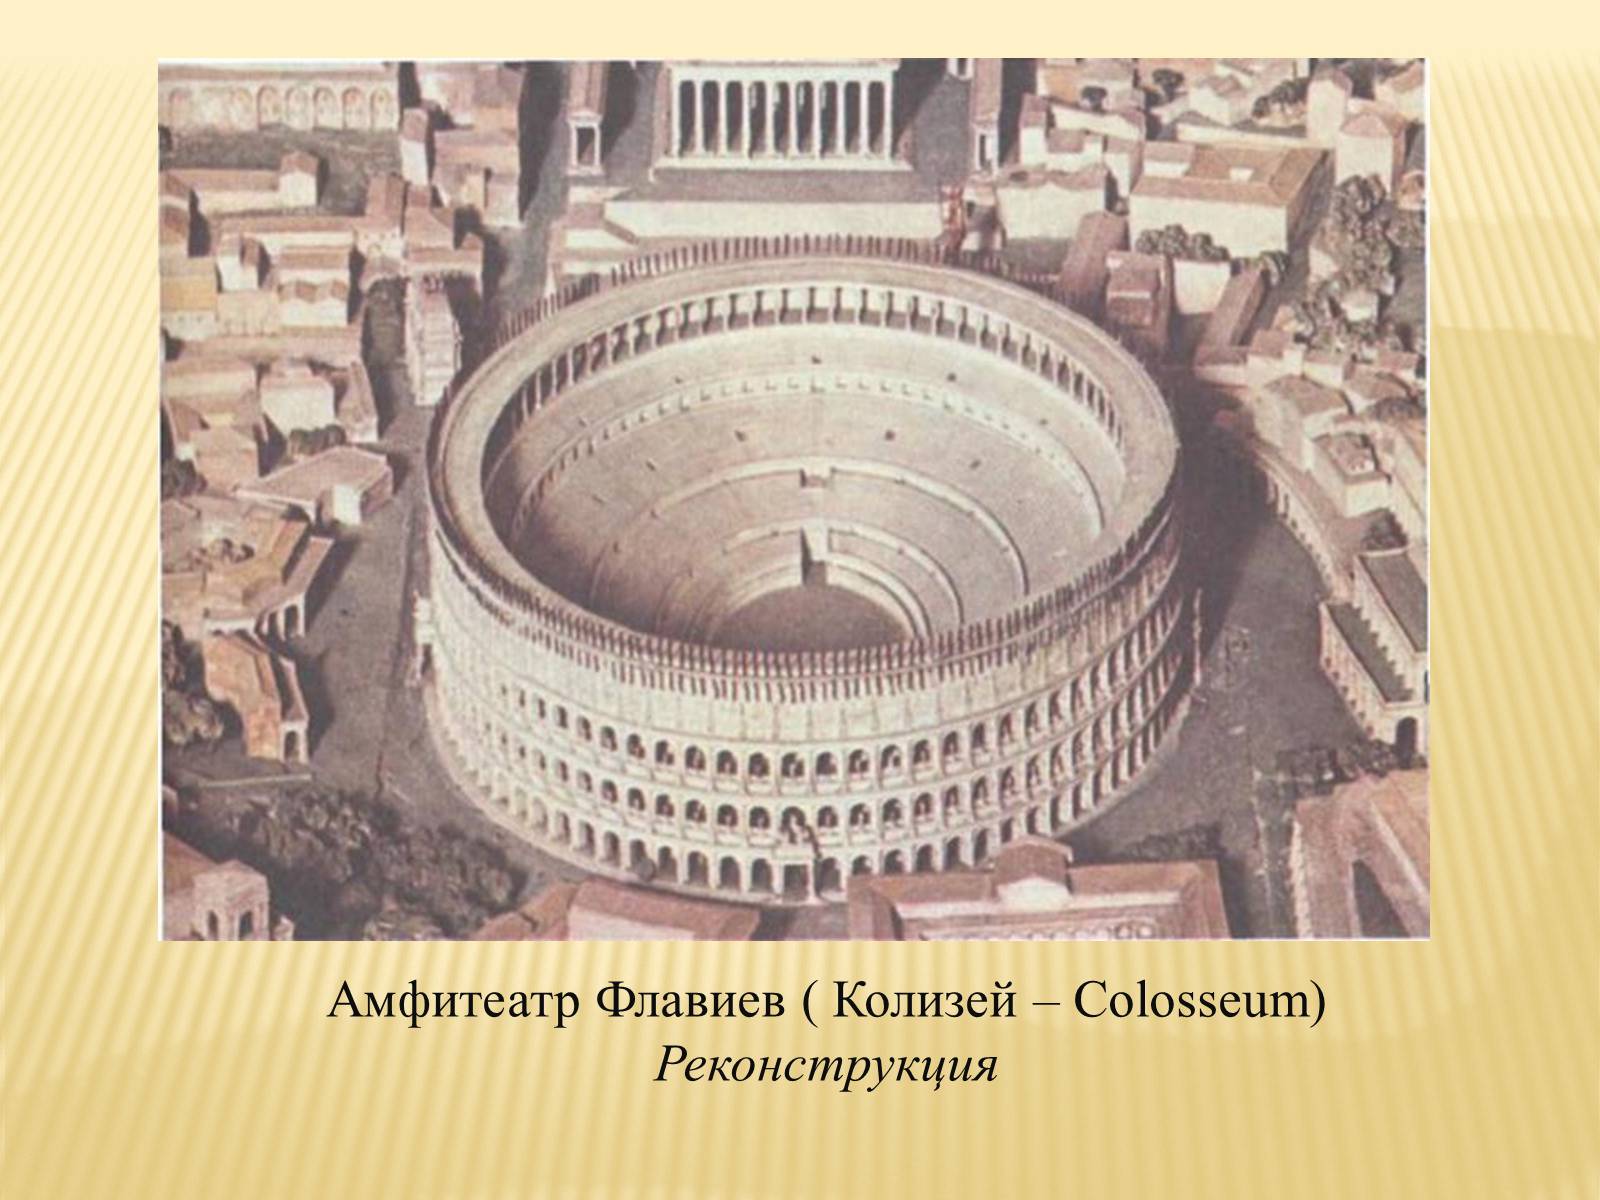 Амфитеатр Флавиев в Риме